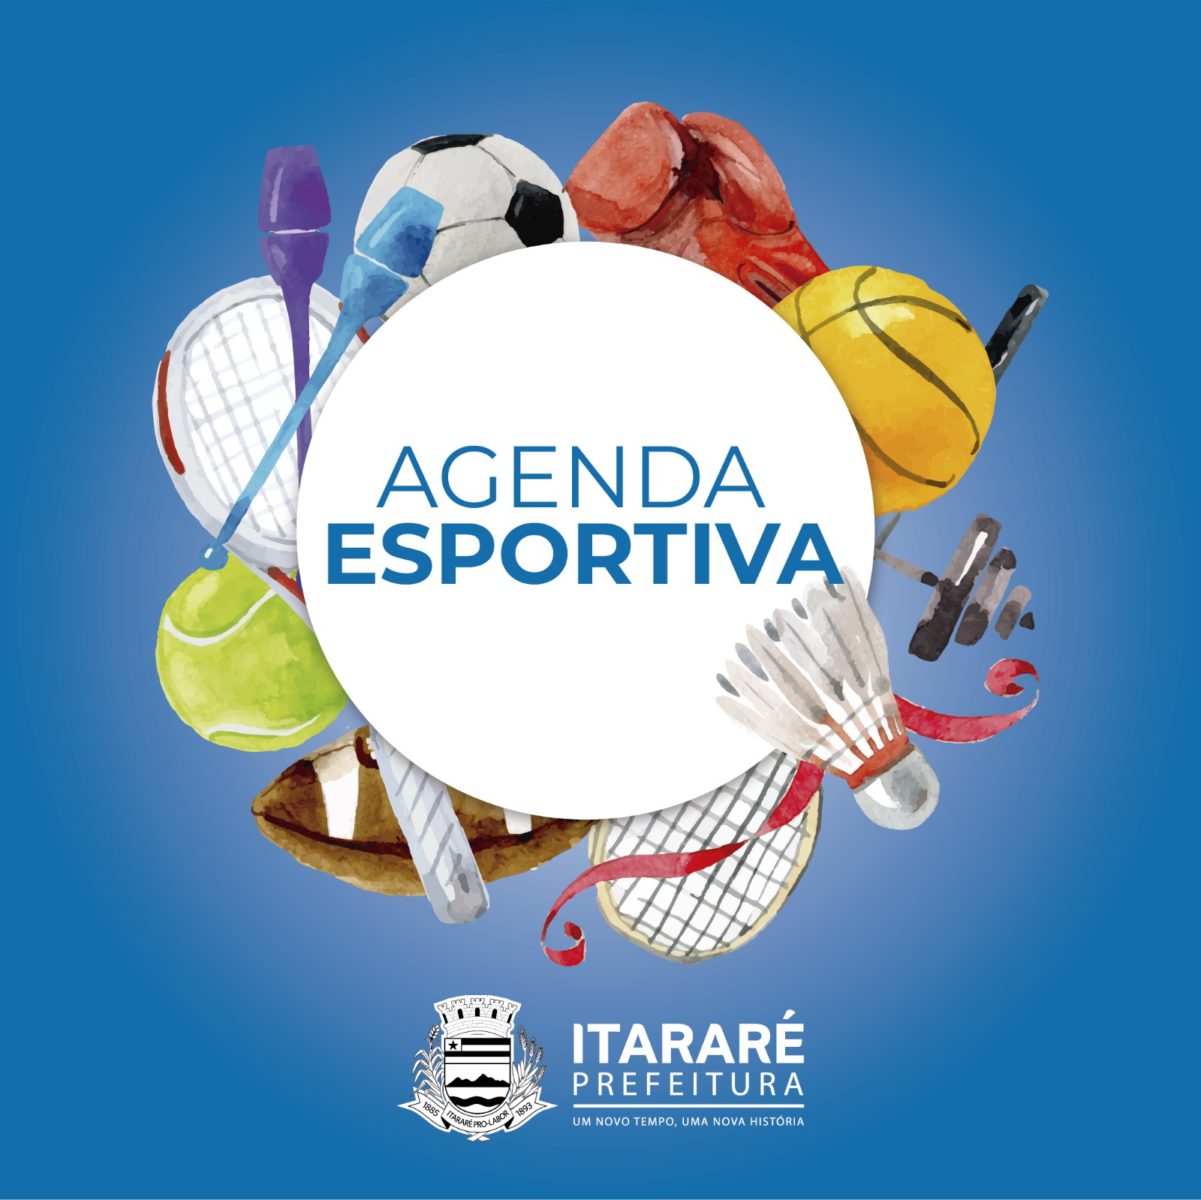 Agenda Esportiva: Itararé (SP) enfrenta Capão Bonito (SP) no Basquetebol pelos Jogos da Juventude 2019